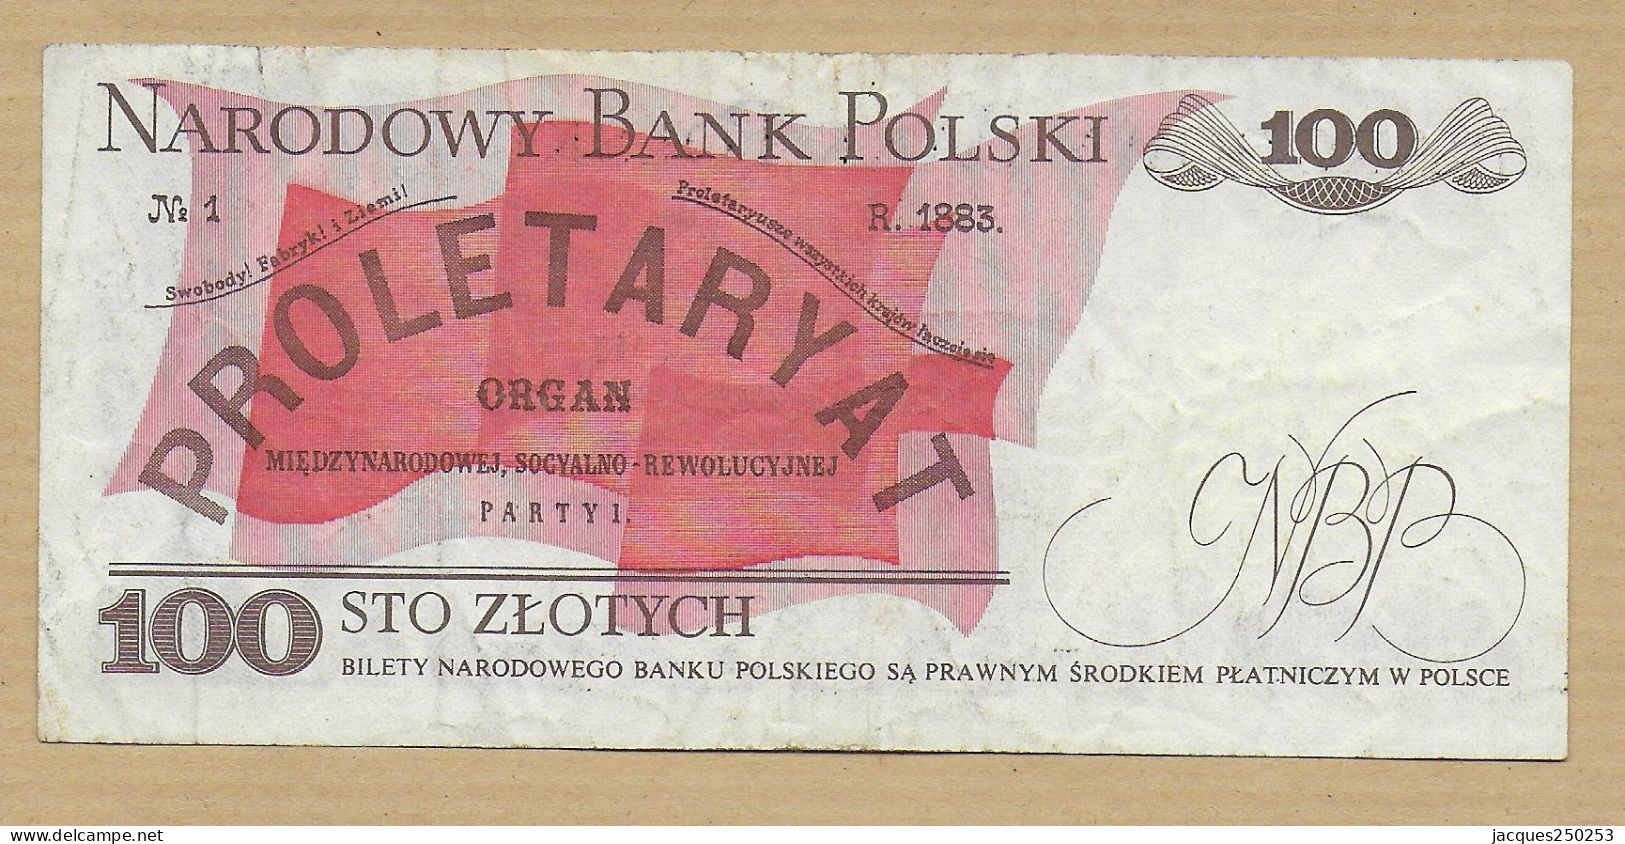 100 STO ZLOTYCH 1 JUIN 1986 - Pologne